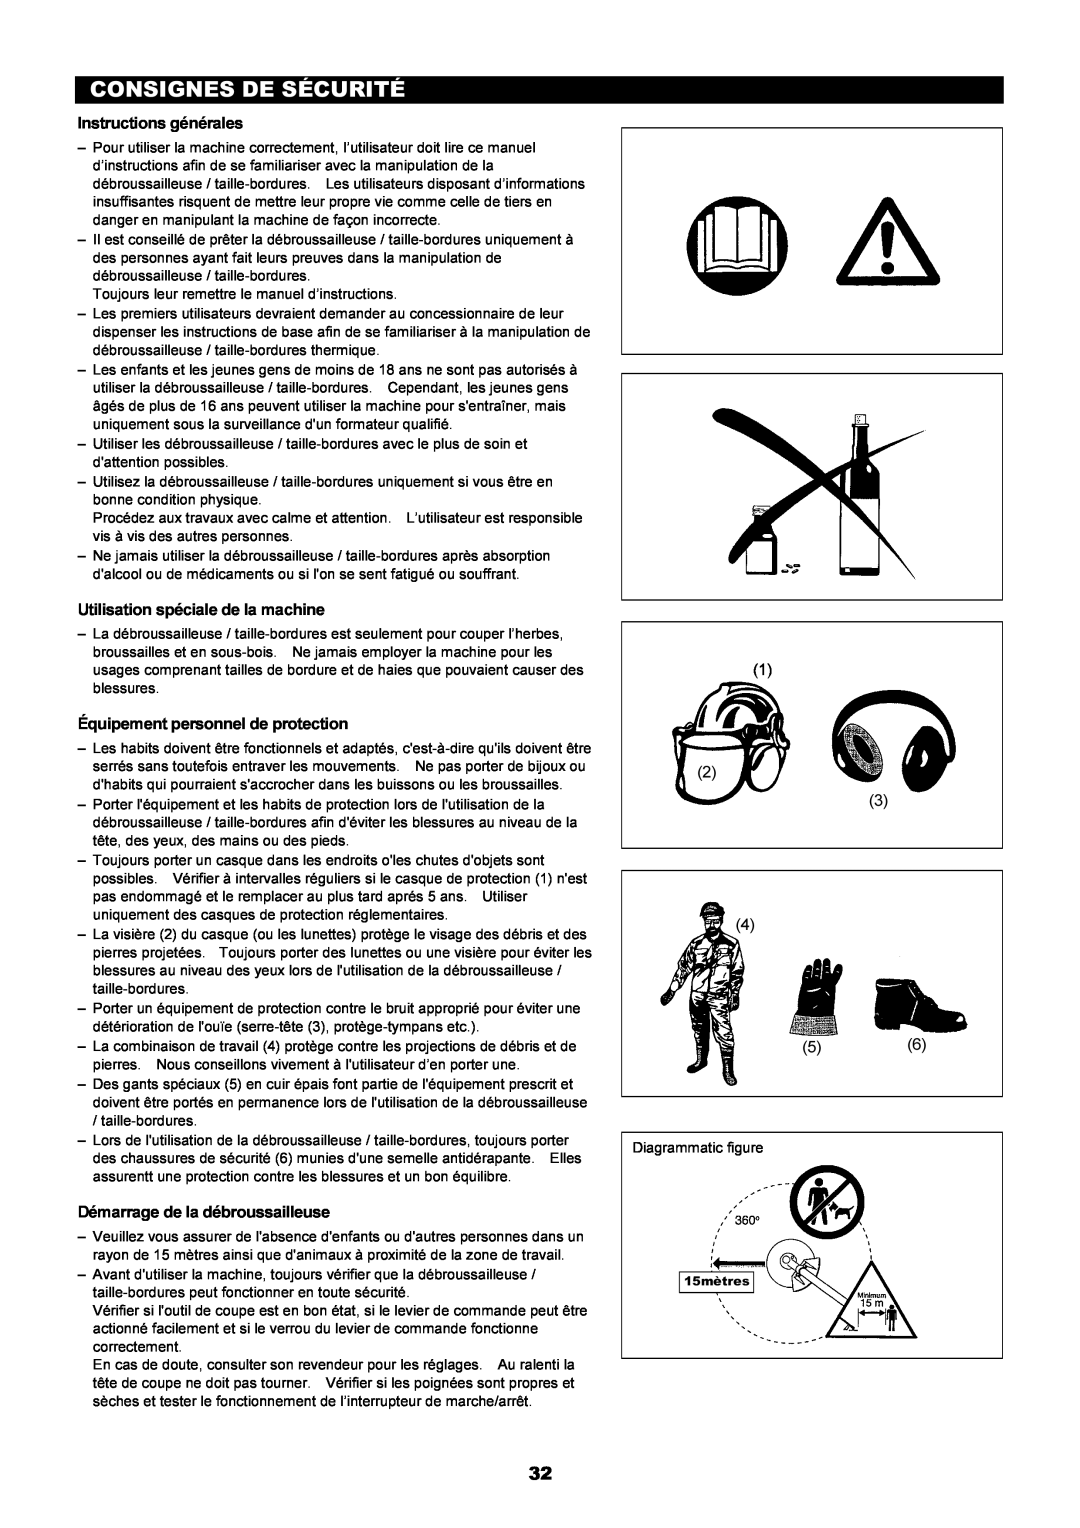 Dolmar MS-251.4, MS-250.4 Consignes De Sécurité, Instructions générales, Utilisation spéciale de la machine 